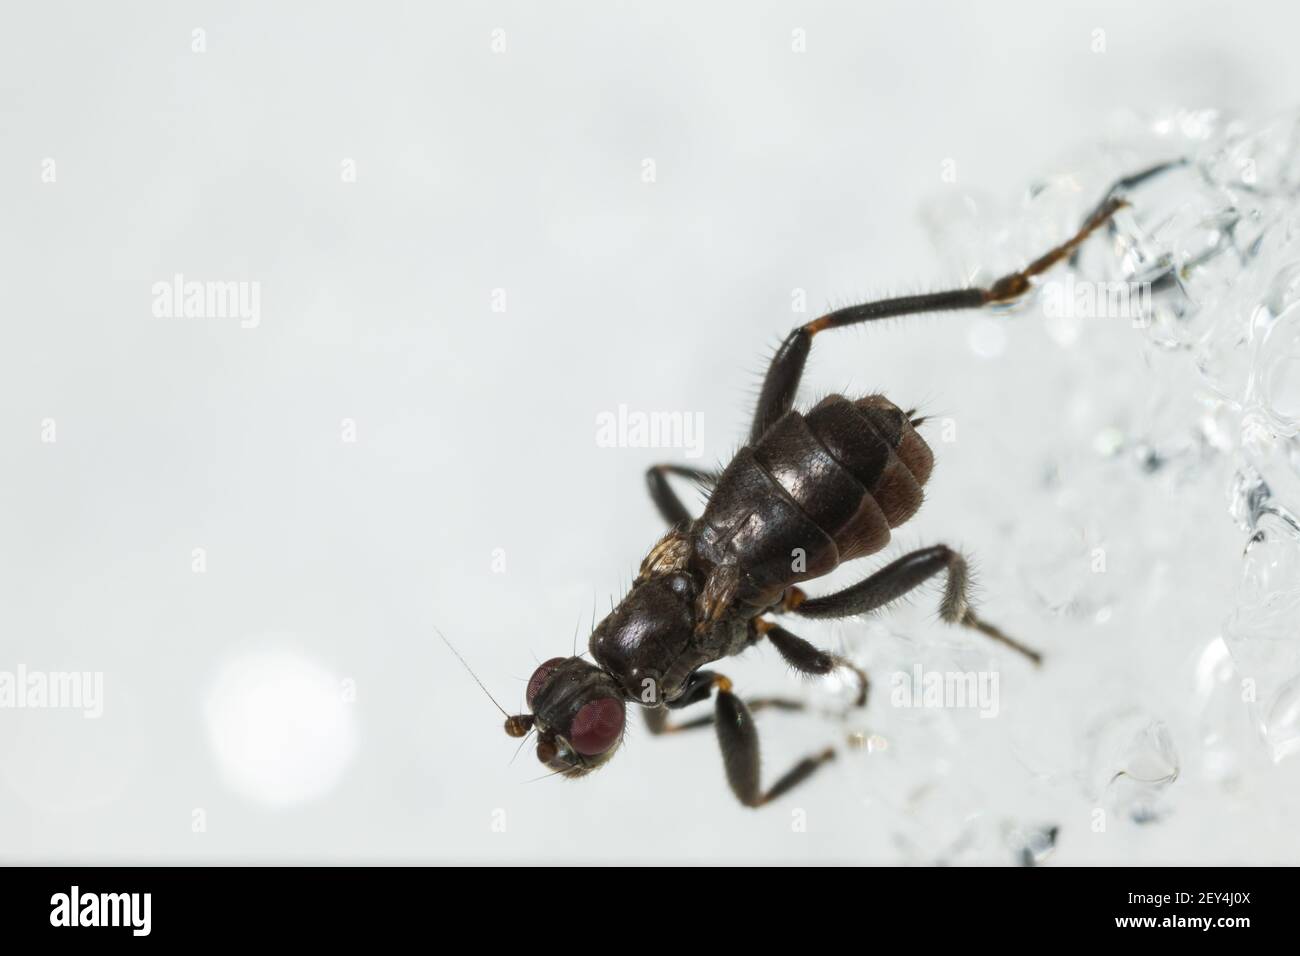 Petite mouche de Dung (Crumomyia pedestris) marchant sur la neige Banque D'Images